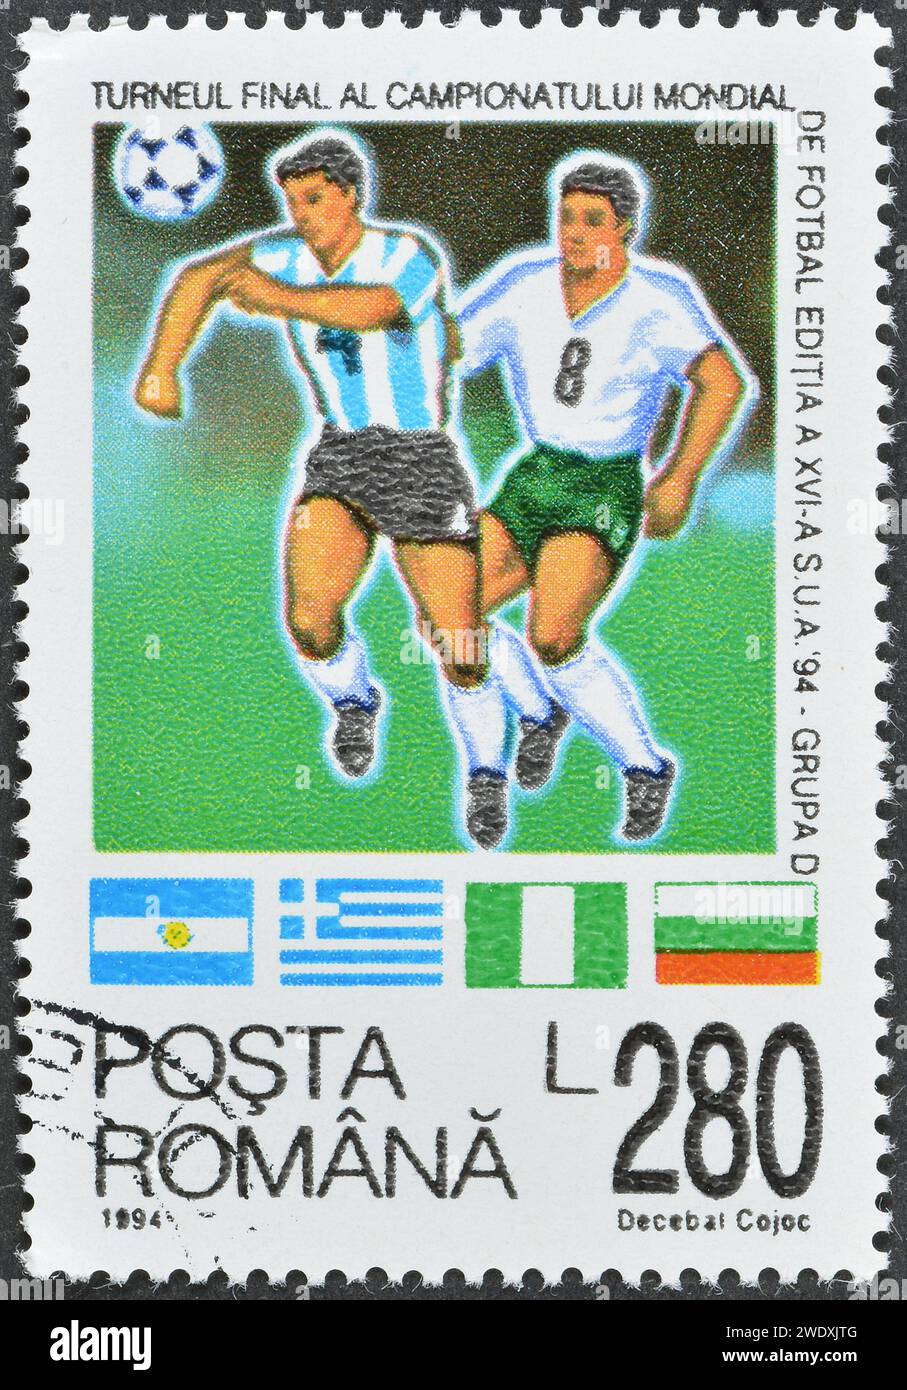 Timbre-poste annulé imprimé par la Roumanie, qui montre le Groupe D et promeut le football, coupe du monde - USA, circa 1994. Banque D'Images